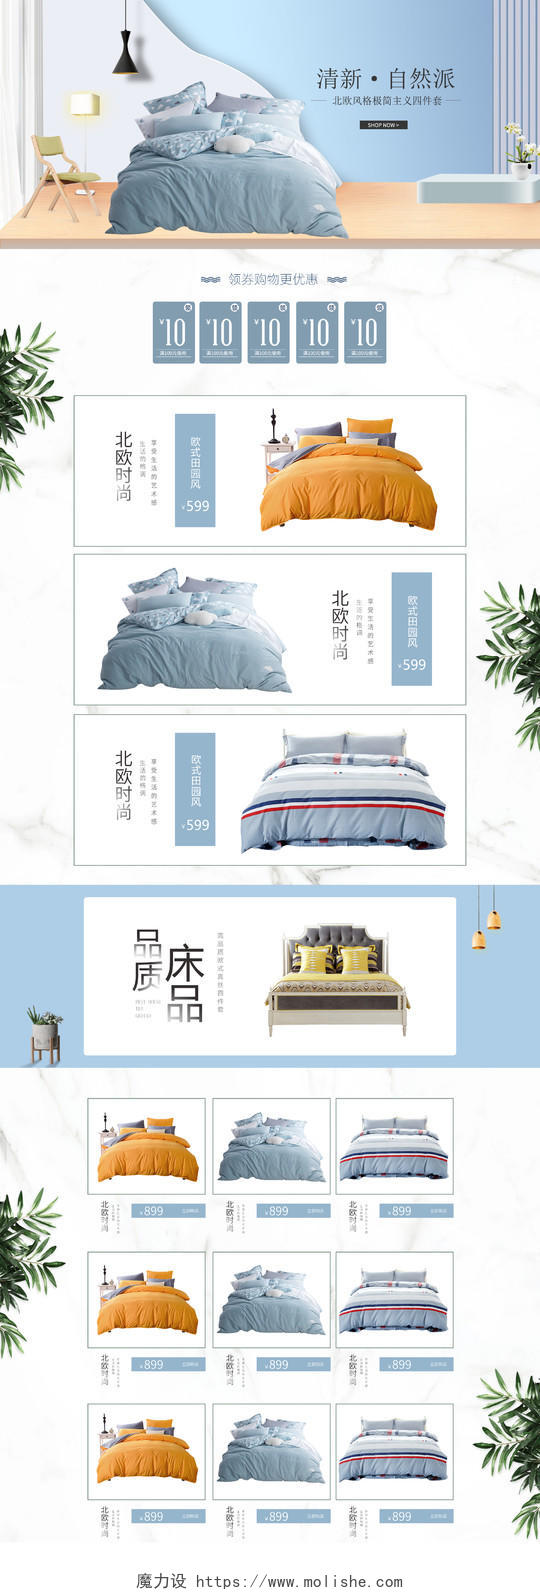 天猫淘宝首页家纺床上用品四件套蓝色清新家居风格夏季促销活动